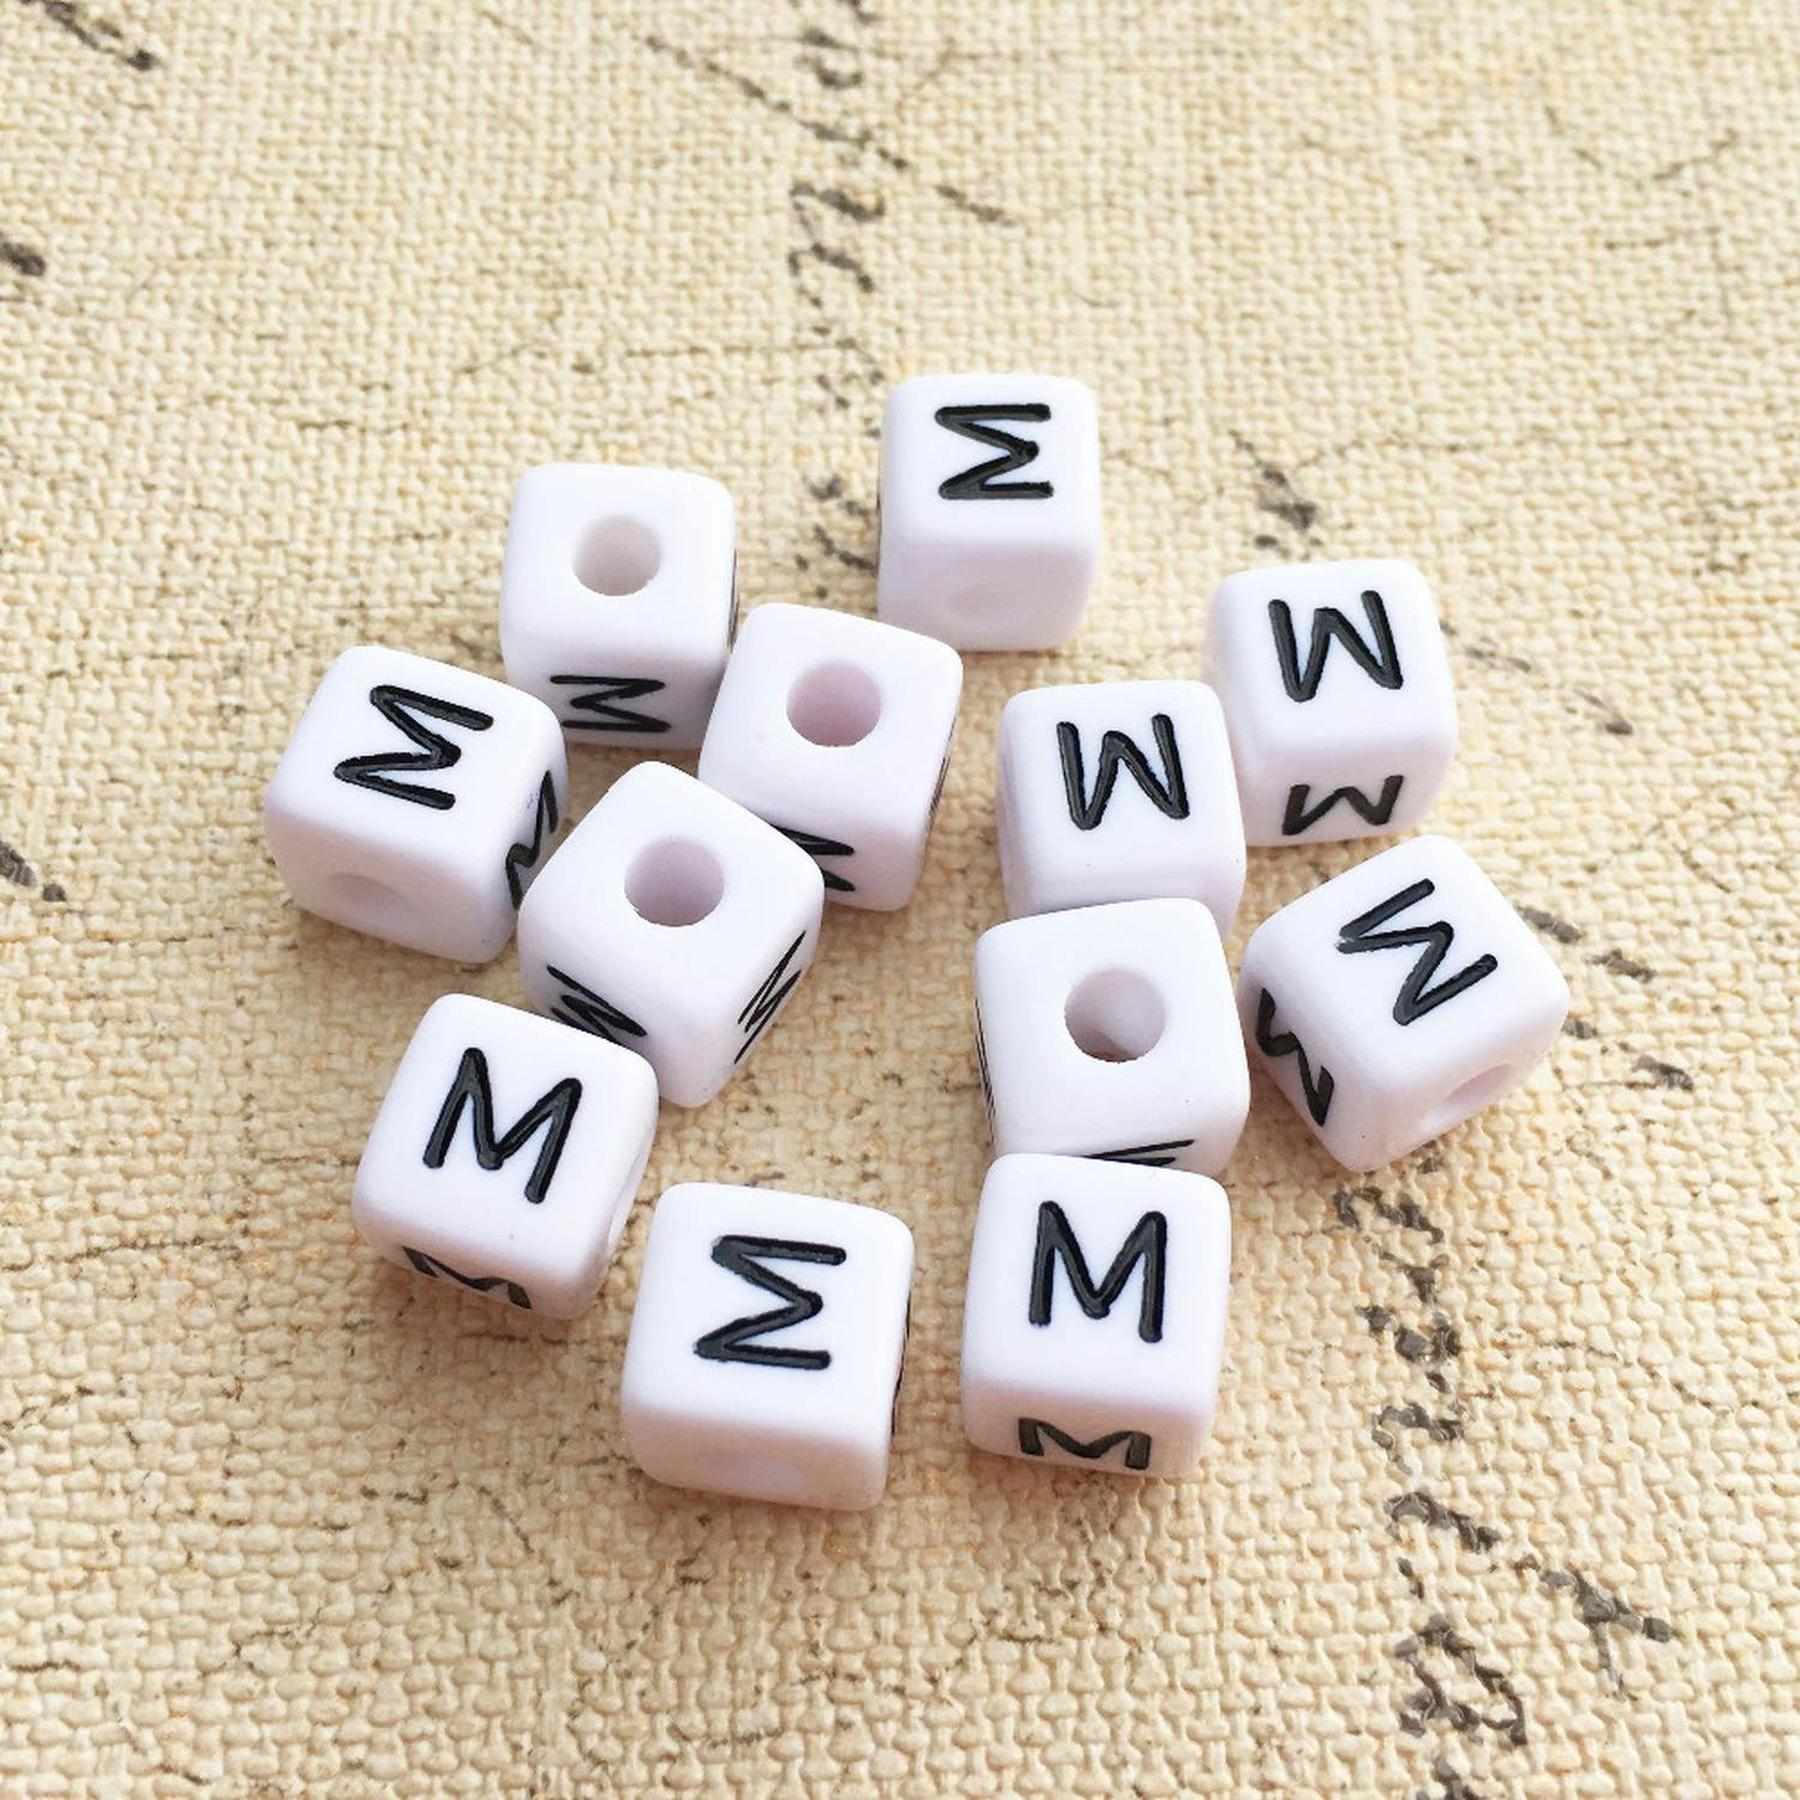 Buchstaben Perlen, 30 Stück, 6x6 mm, weiß mit schwarz, eckig, Buchstabe M